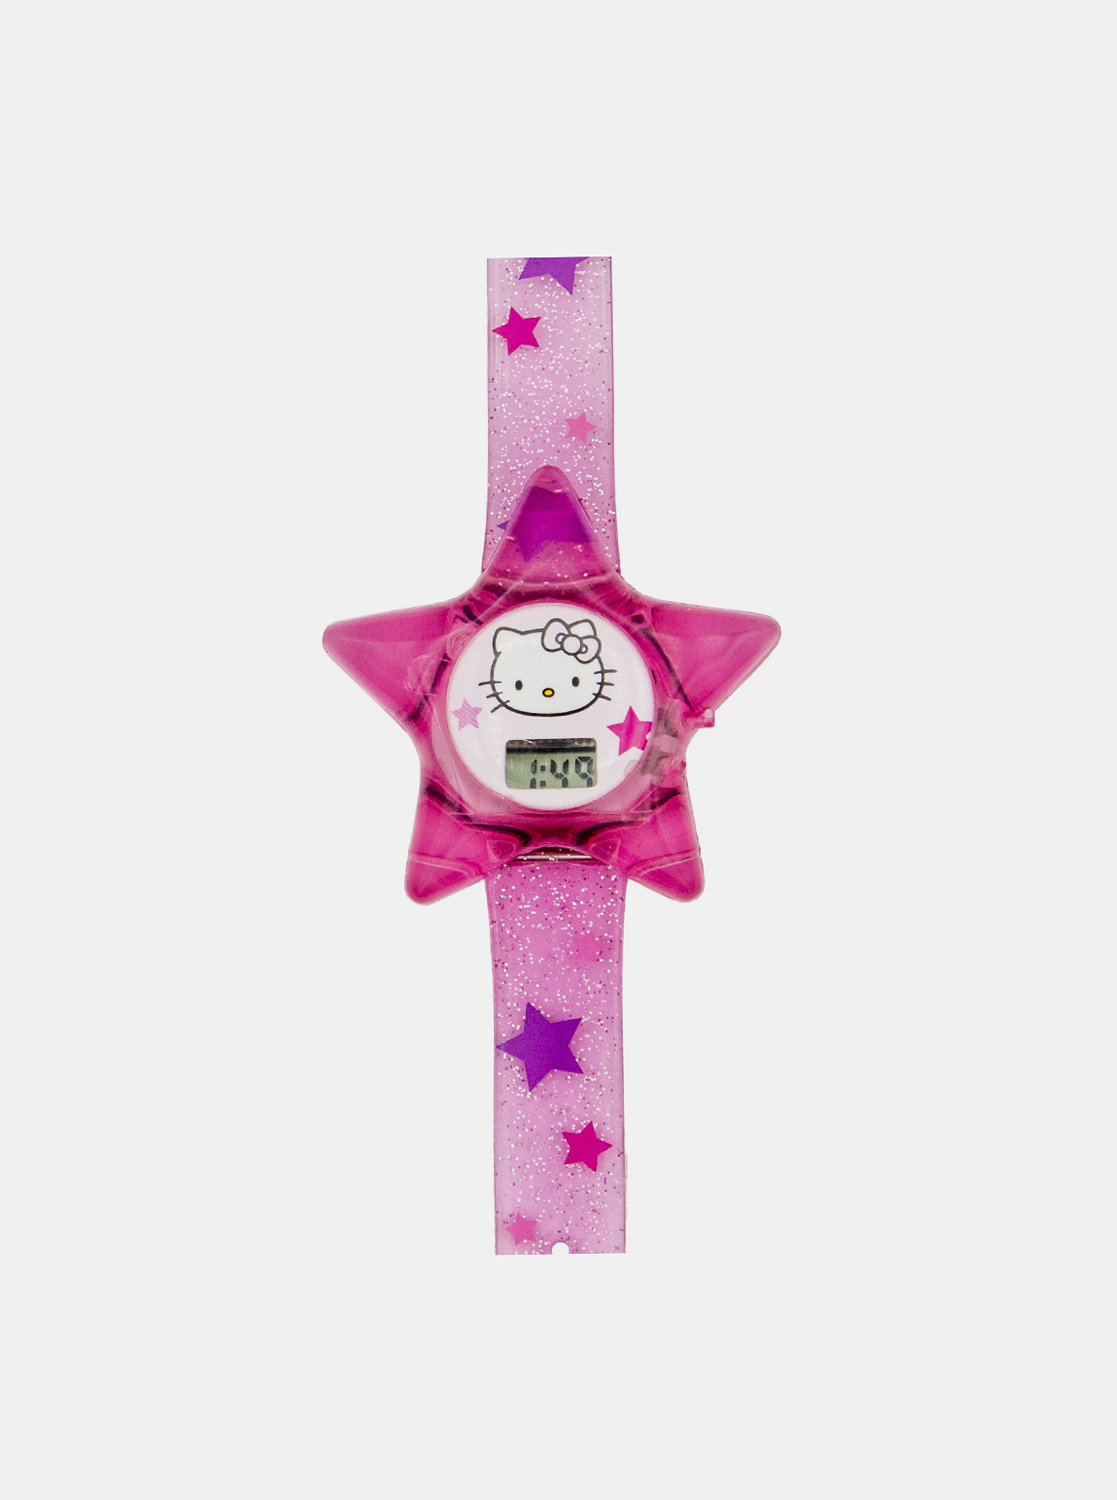 Fotografie Růžové holčičí hodinky ve tvaru hvězdy Hello Kitty